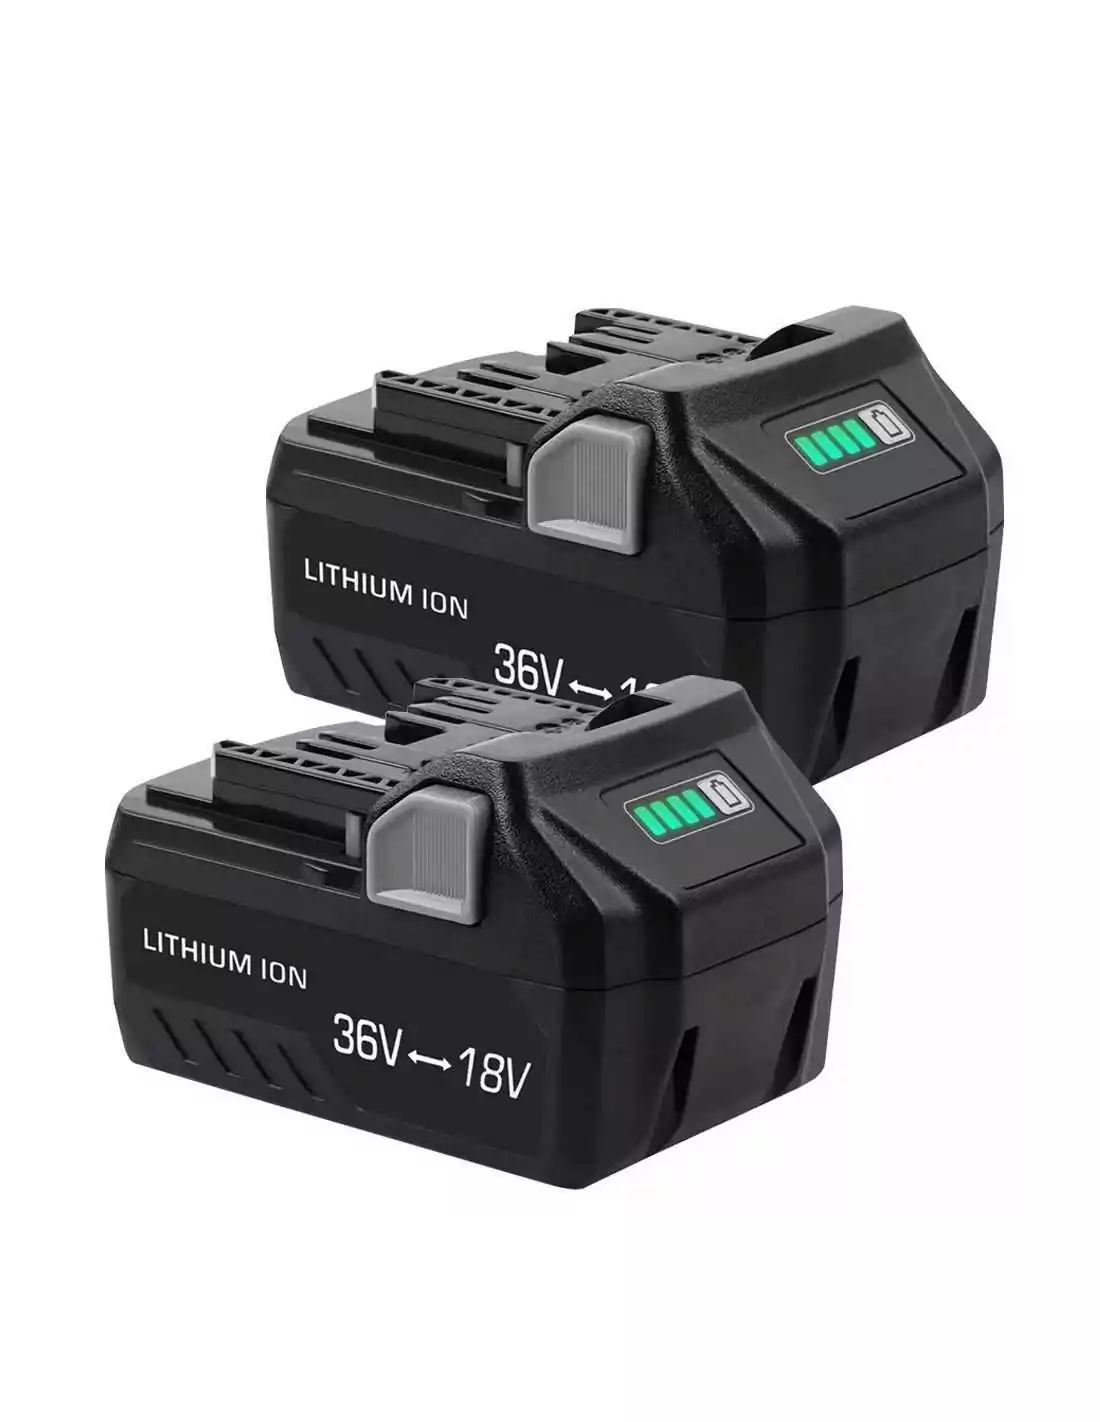 https://www.batteryer.co.uk/8707-thickbox_default/for-hikoki-hitachi-18v-80ah-36v-40ah-bsl36b18-multivolt-li-ion-battery-replacement-twin-pack.jpg